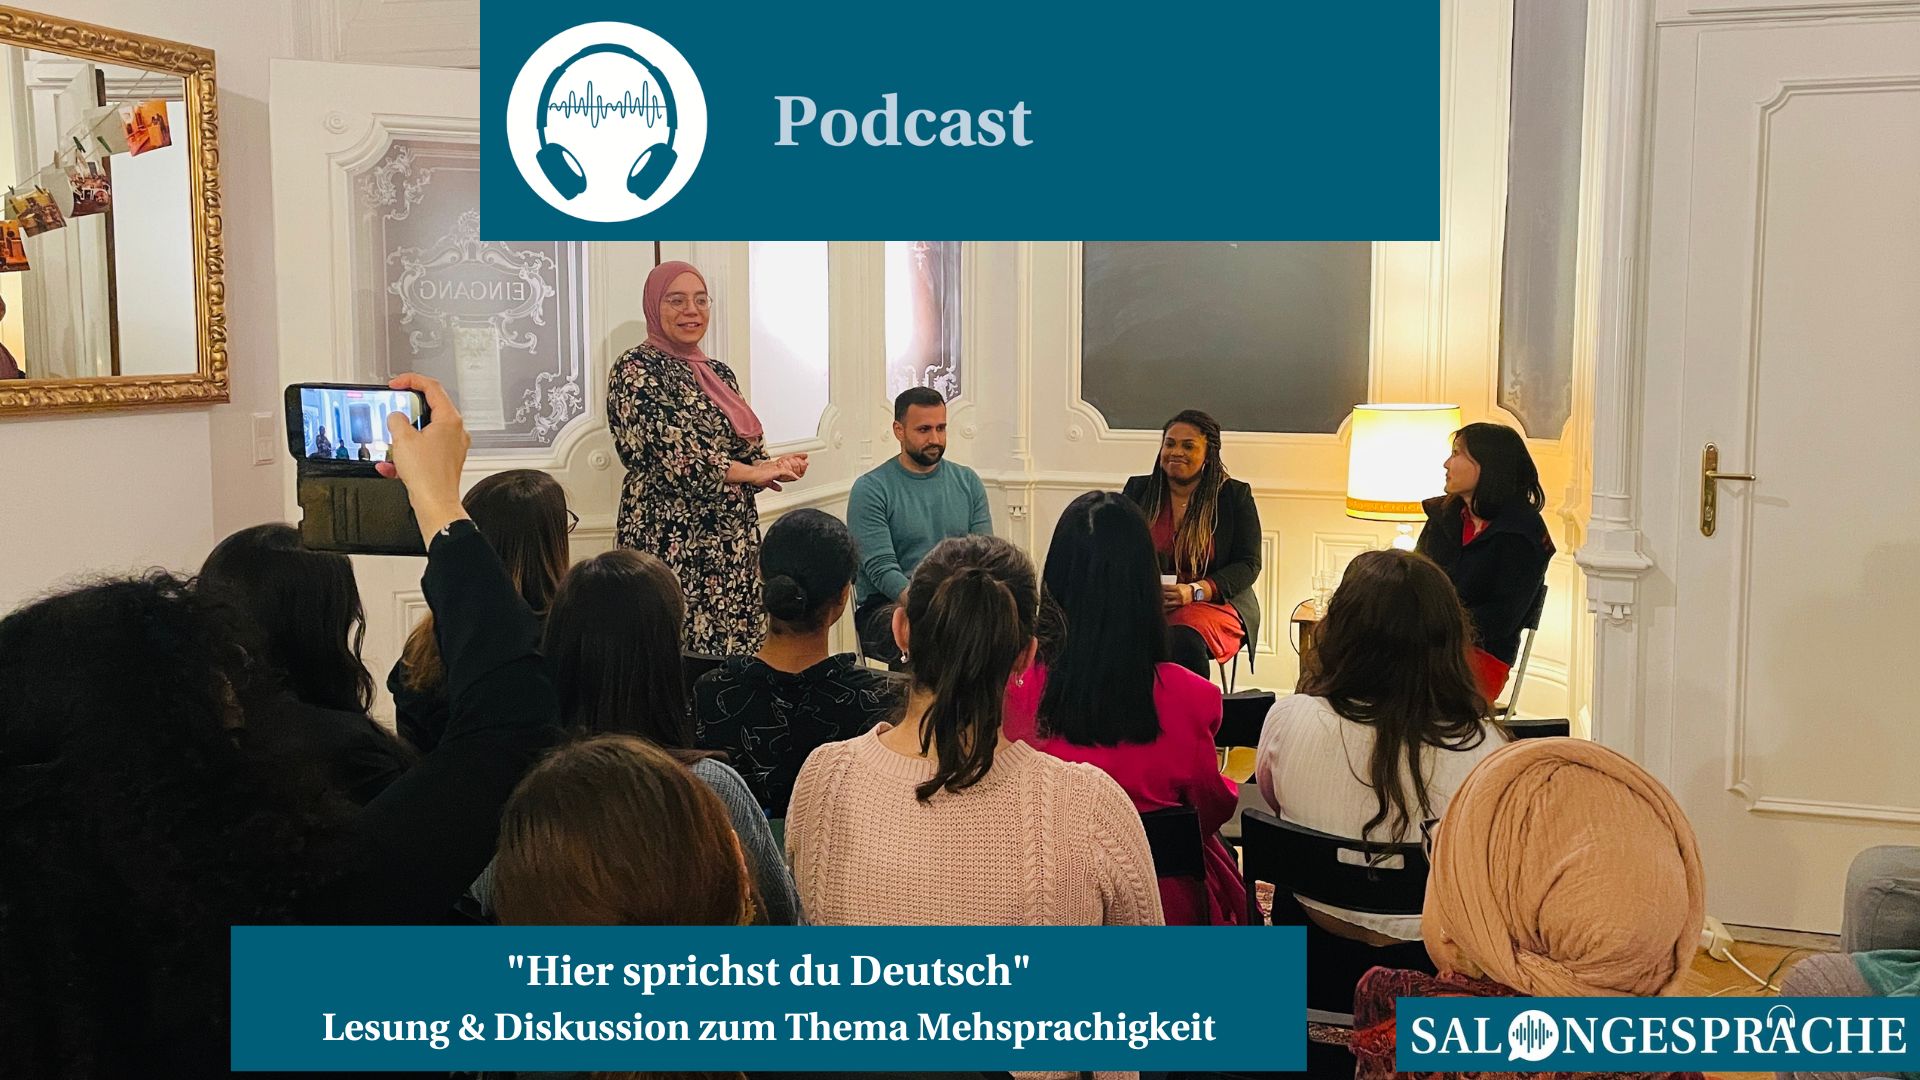 Podcast Salongespräche: Lesung & Diskussion zum Thema Mehrsprachigkeit